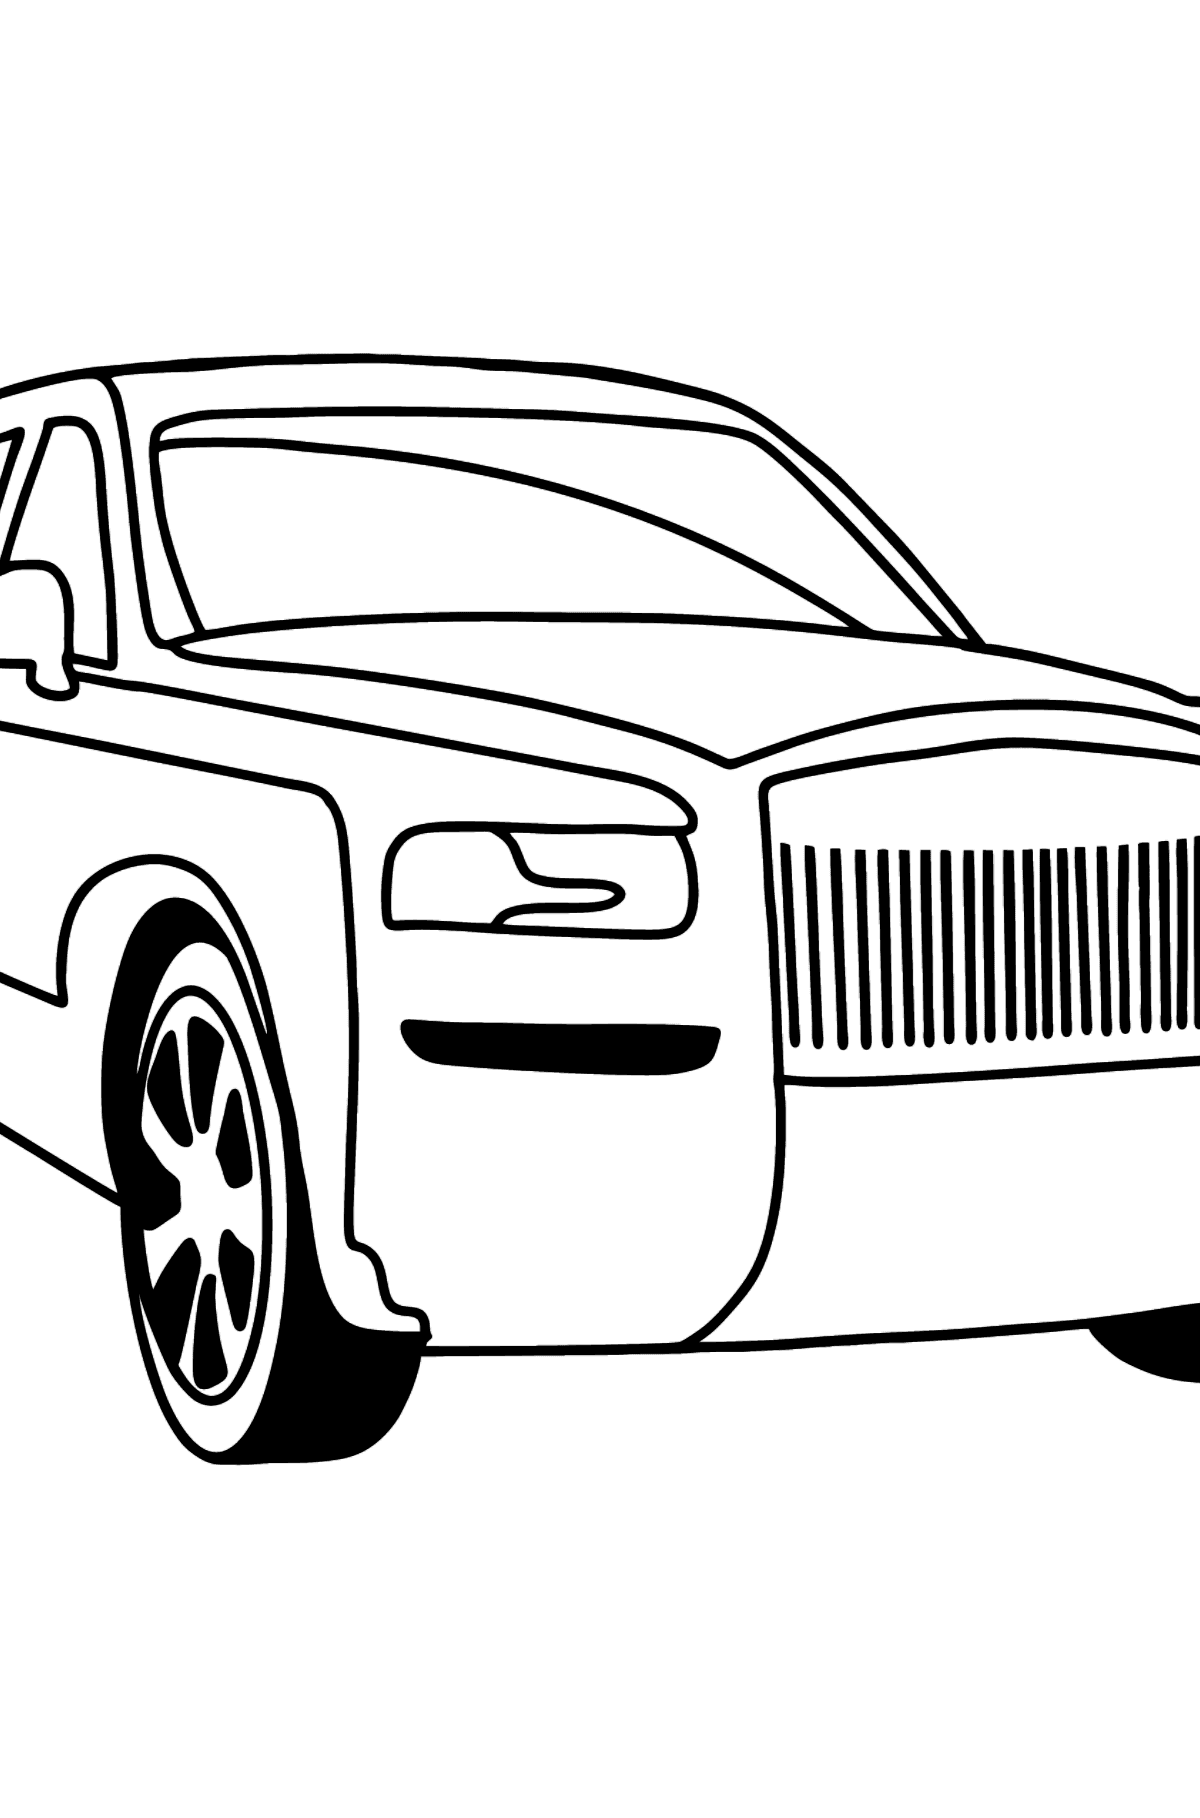 Boyama sayfası Rolls Royce Cullinan'ın arabası - Boyamalar çocuklar için